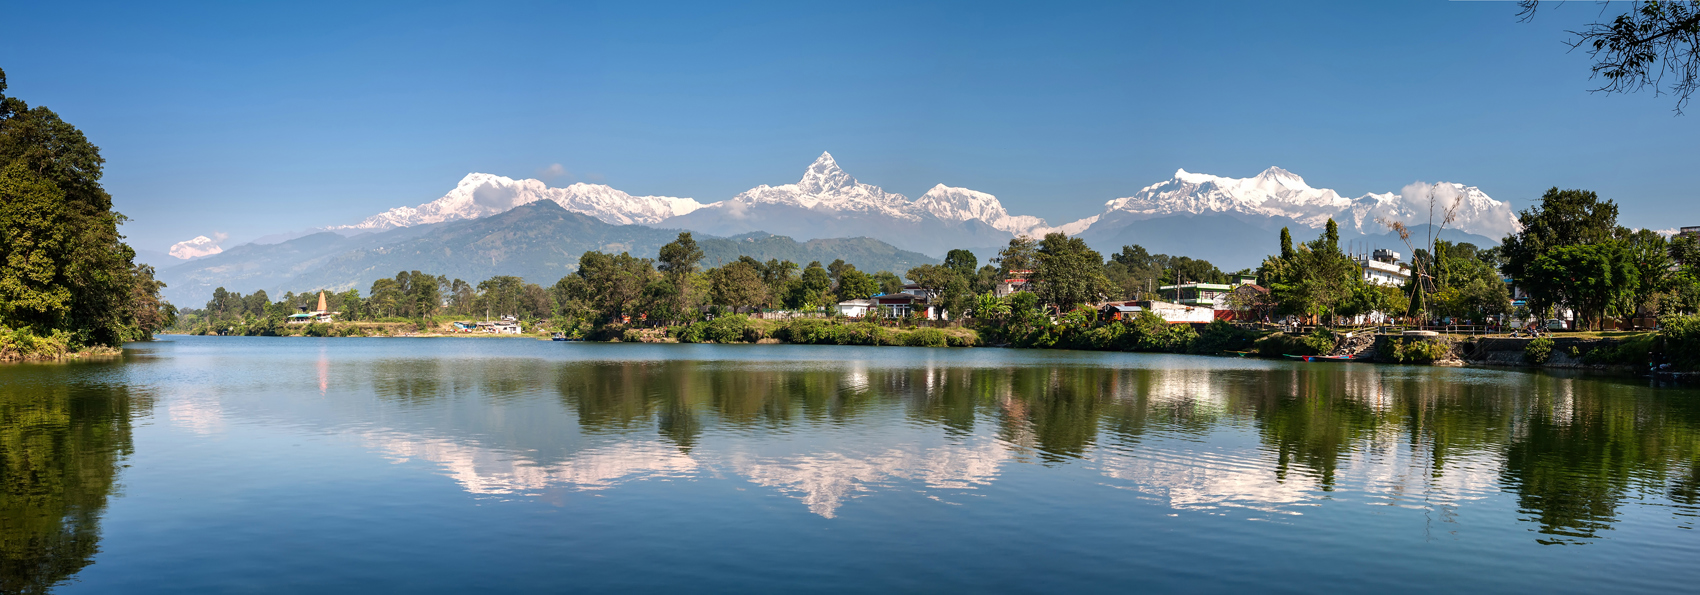 nepal - nepal_phewa lake_02